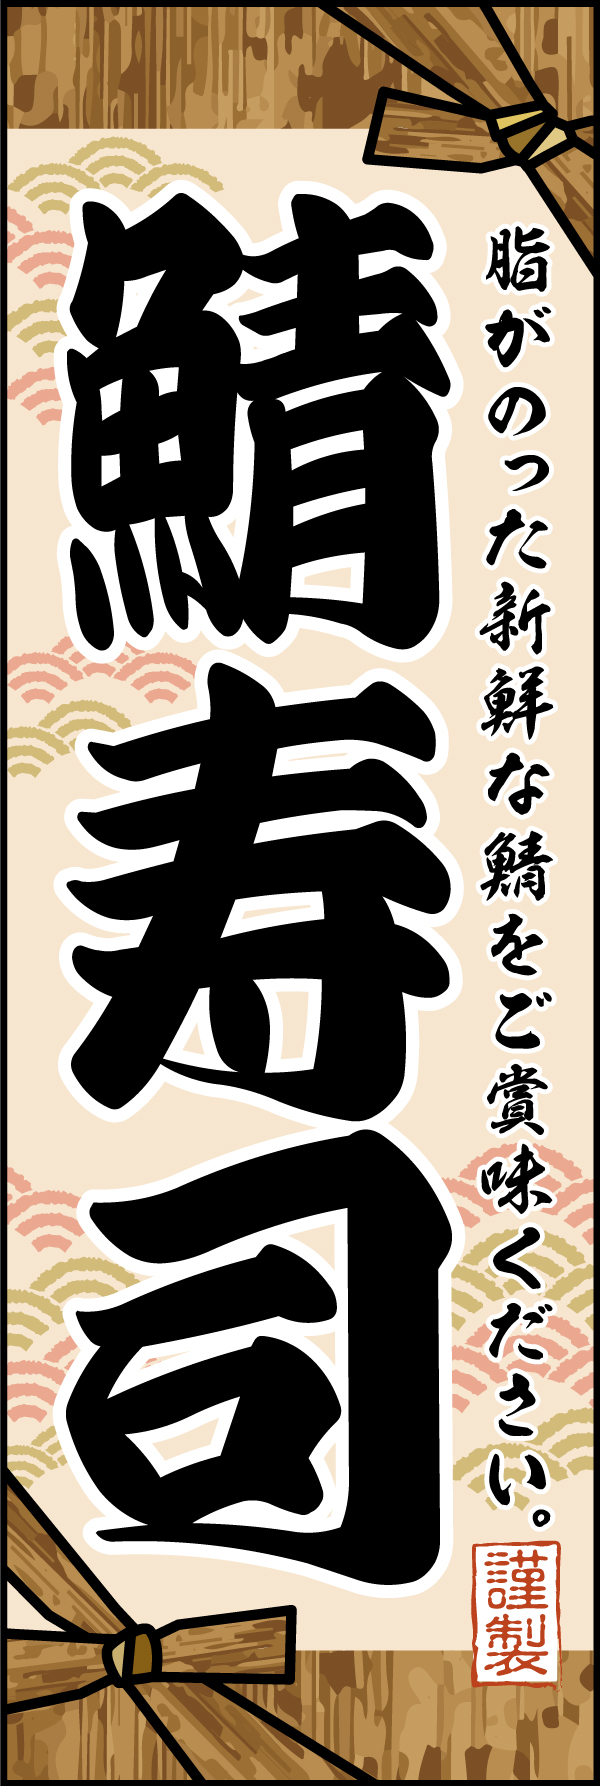 鯖寿司 193_01 「鯖寿司」のぼりです。お寿司を包む竹皮をイメージして手作りの伝統的な雰囲気を表現できるようにデザインしました。（M.H）